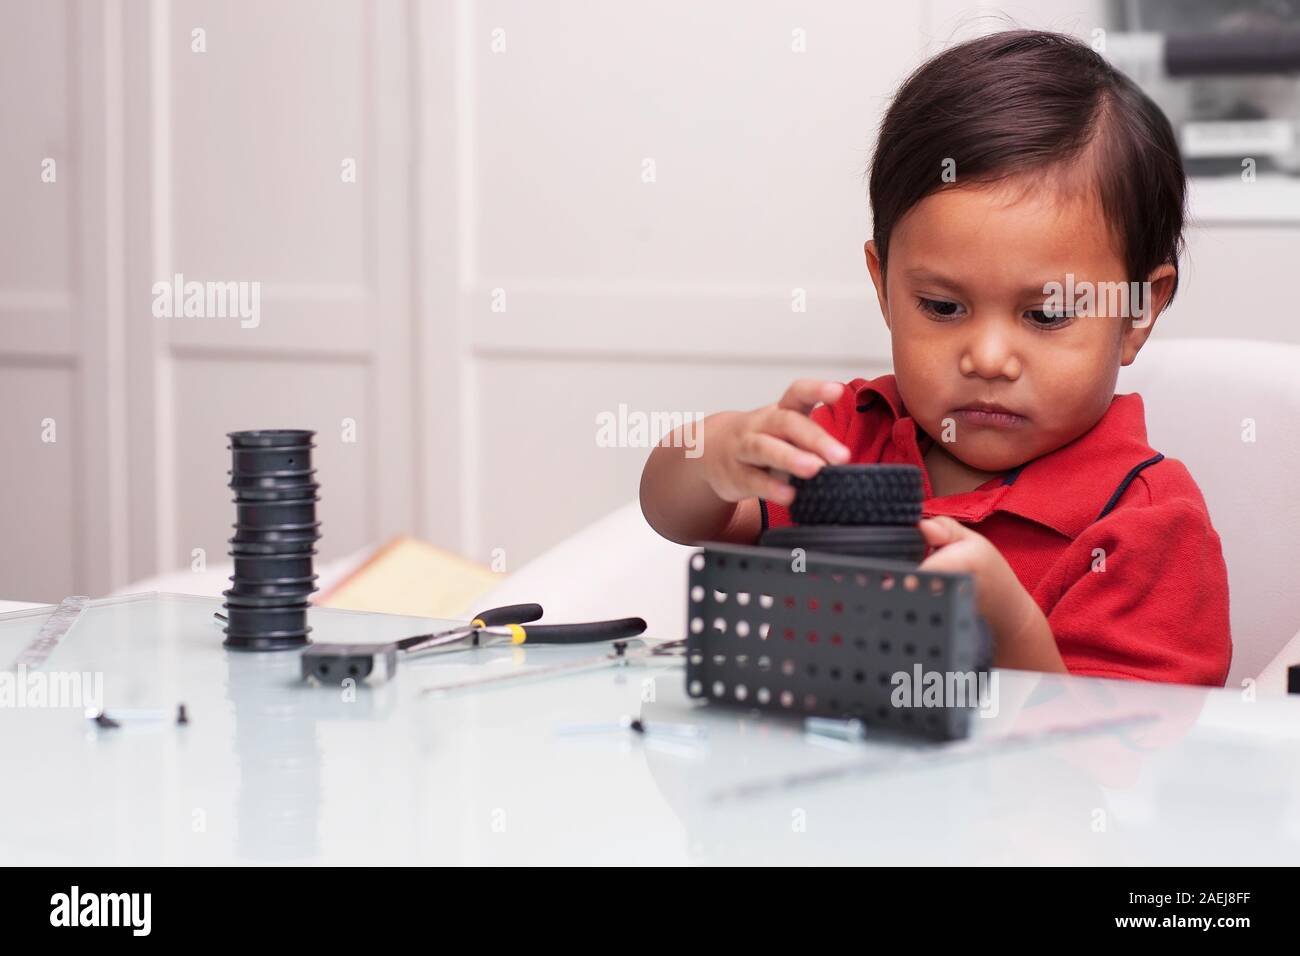 Un jeune garçon d'âge préscolaire, joue avec de petites pièces pour construire des tours à l'aide de la motricité fine sur une table en verre. Banque D'Images